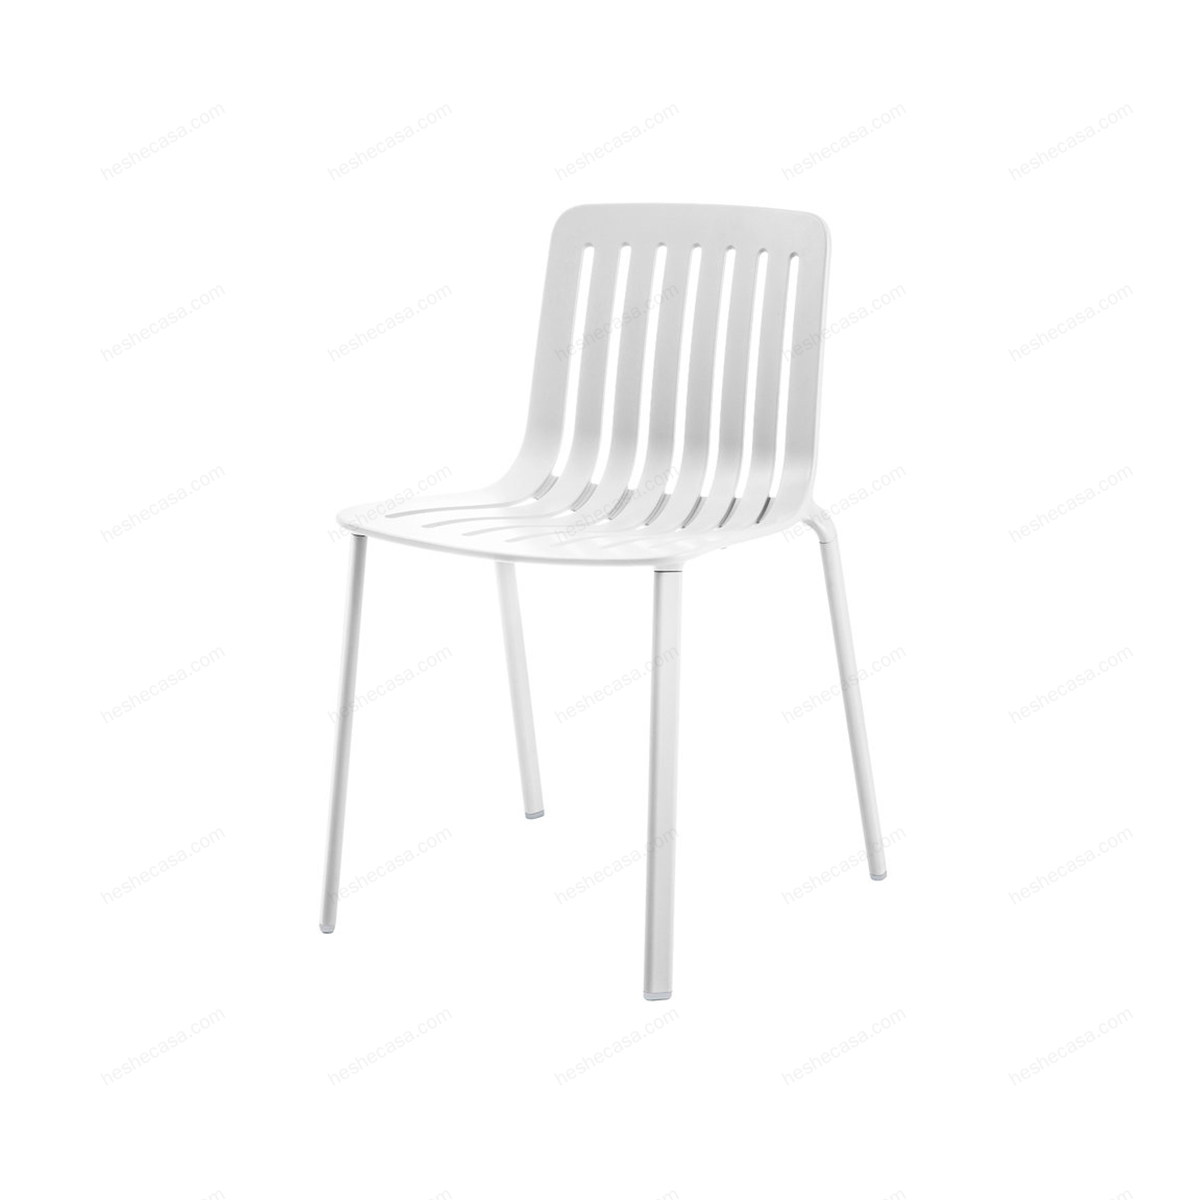 Plato单椅